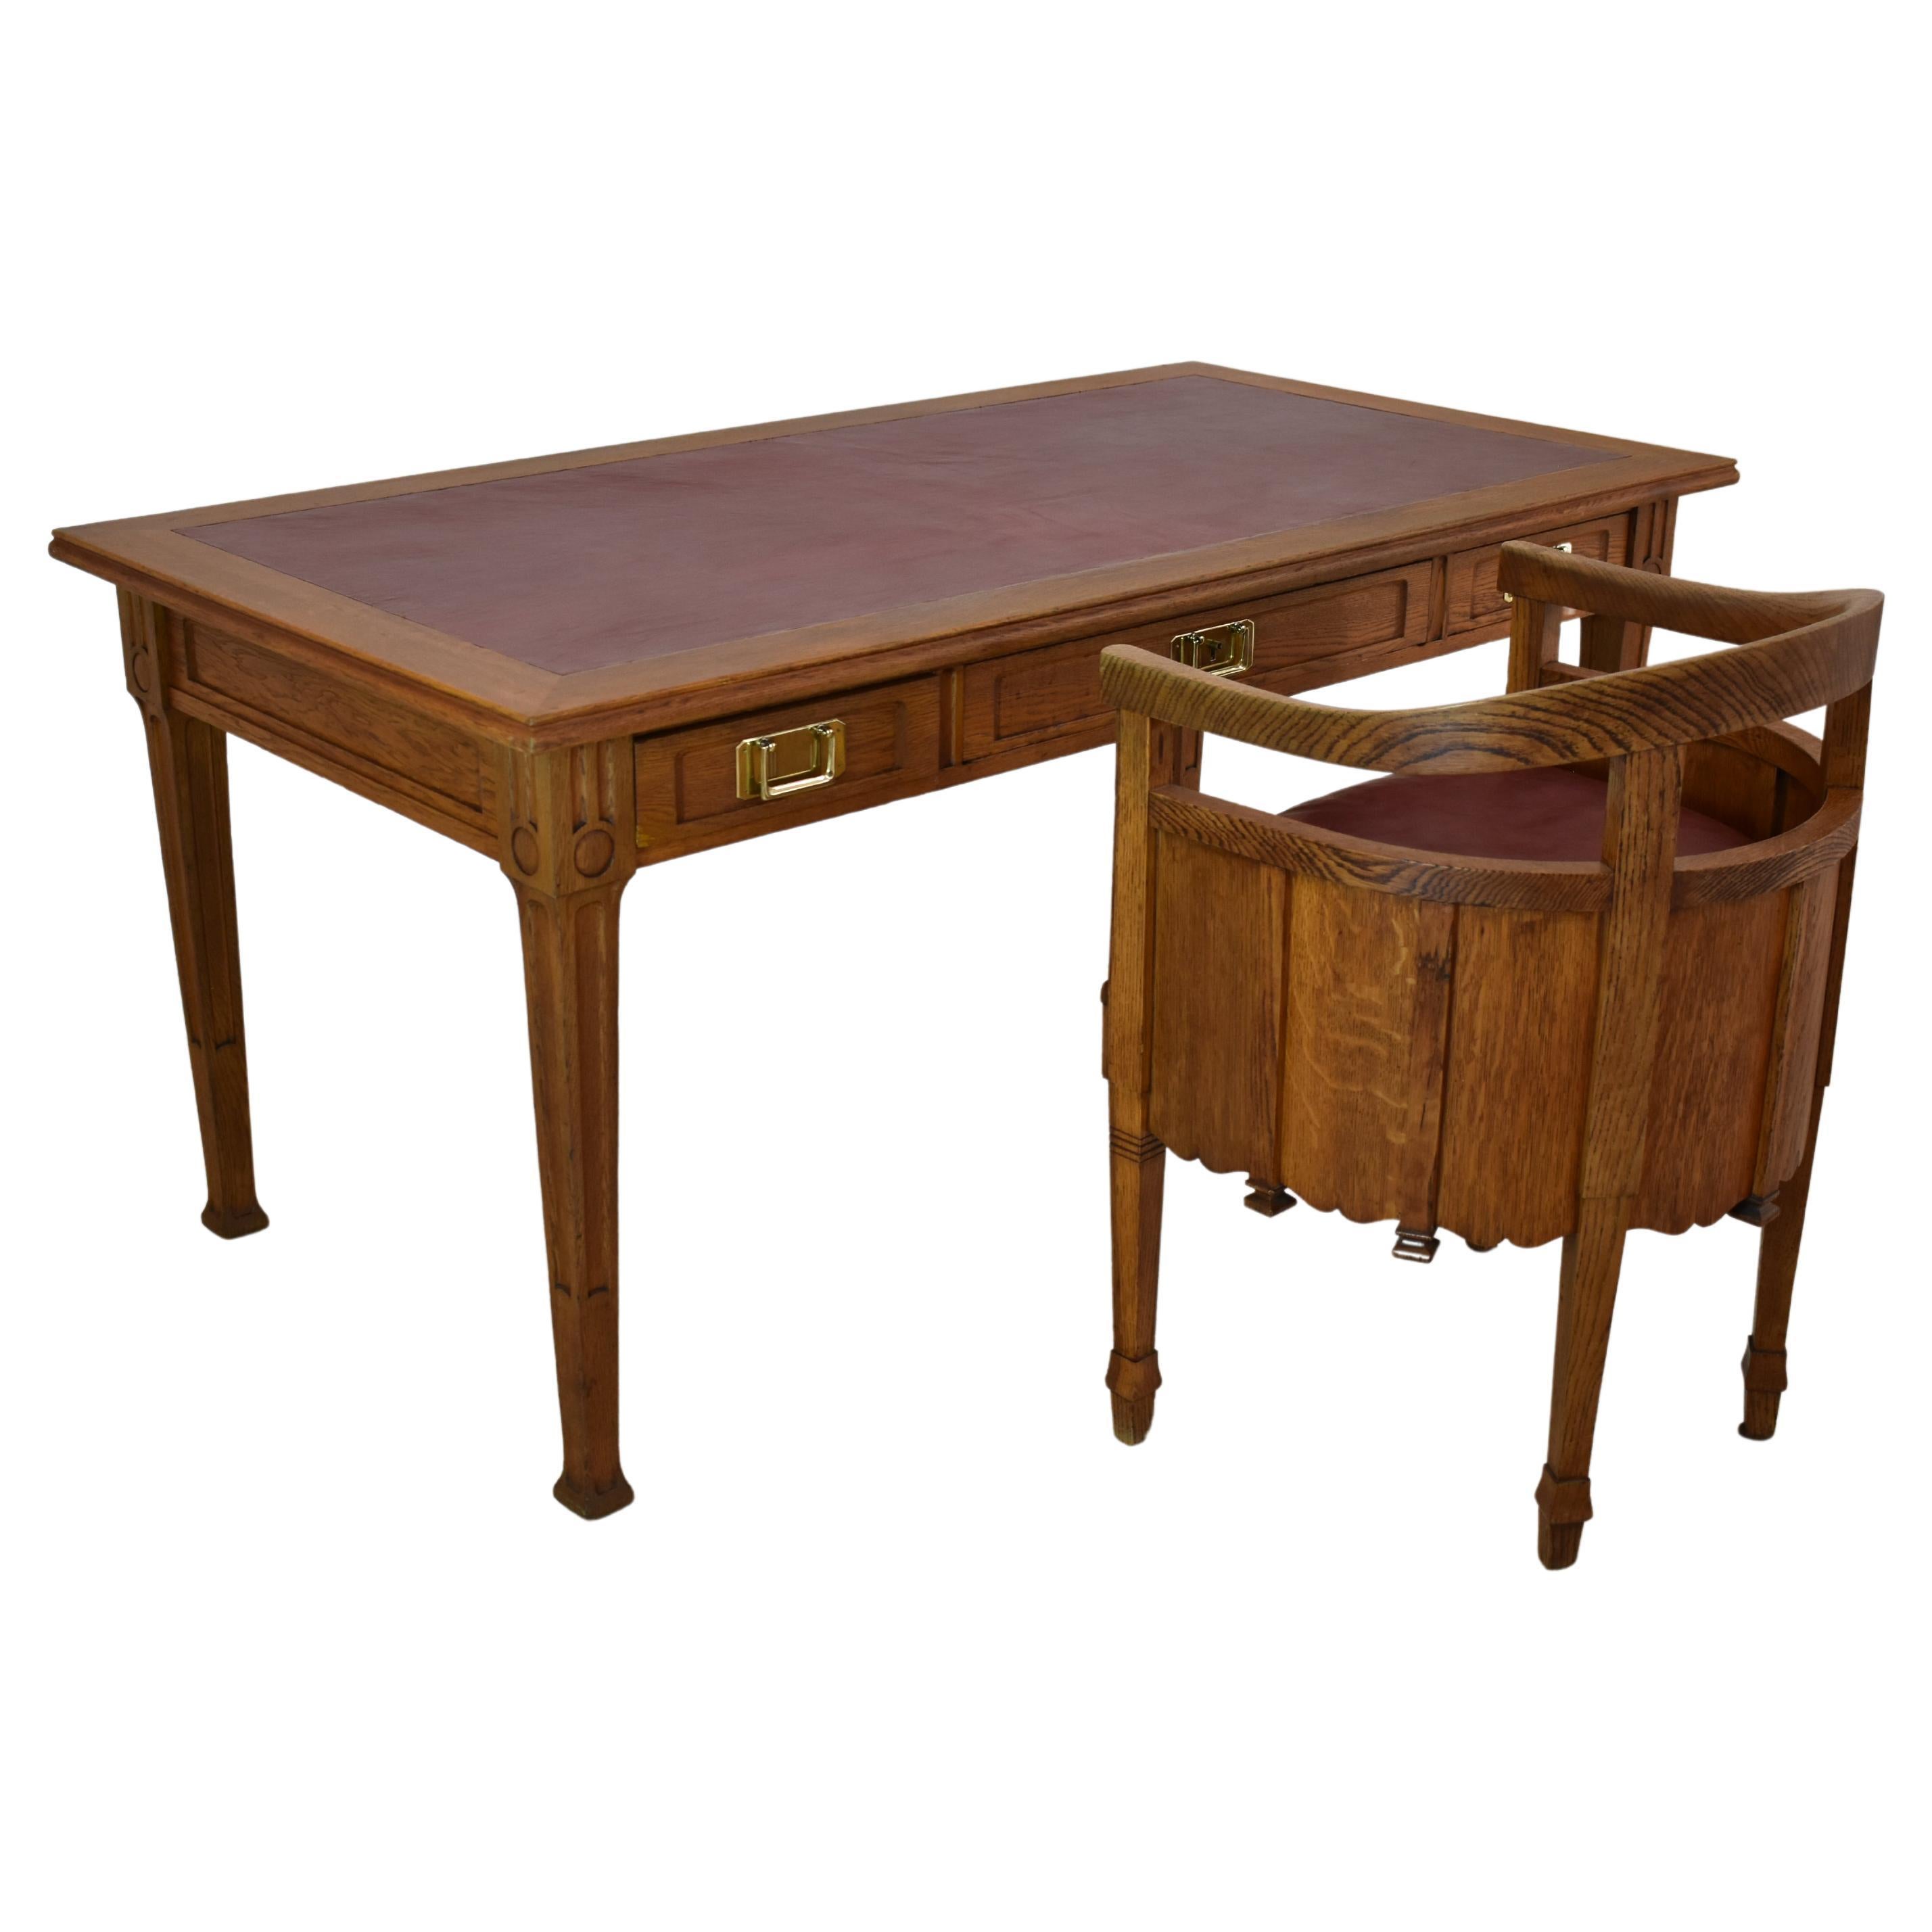  1920's Art Nouveau French Sculpted Oak Art Nouveau Desk with Chair For Sale